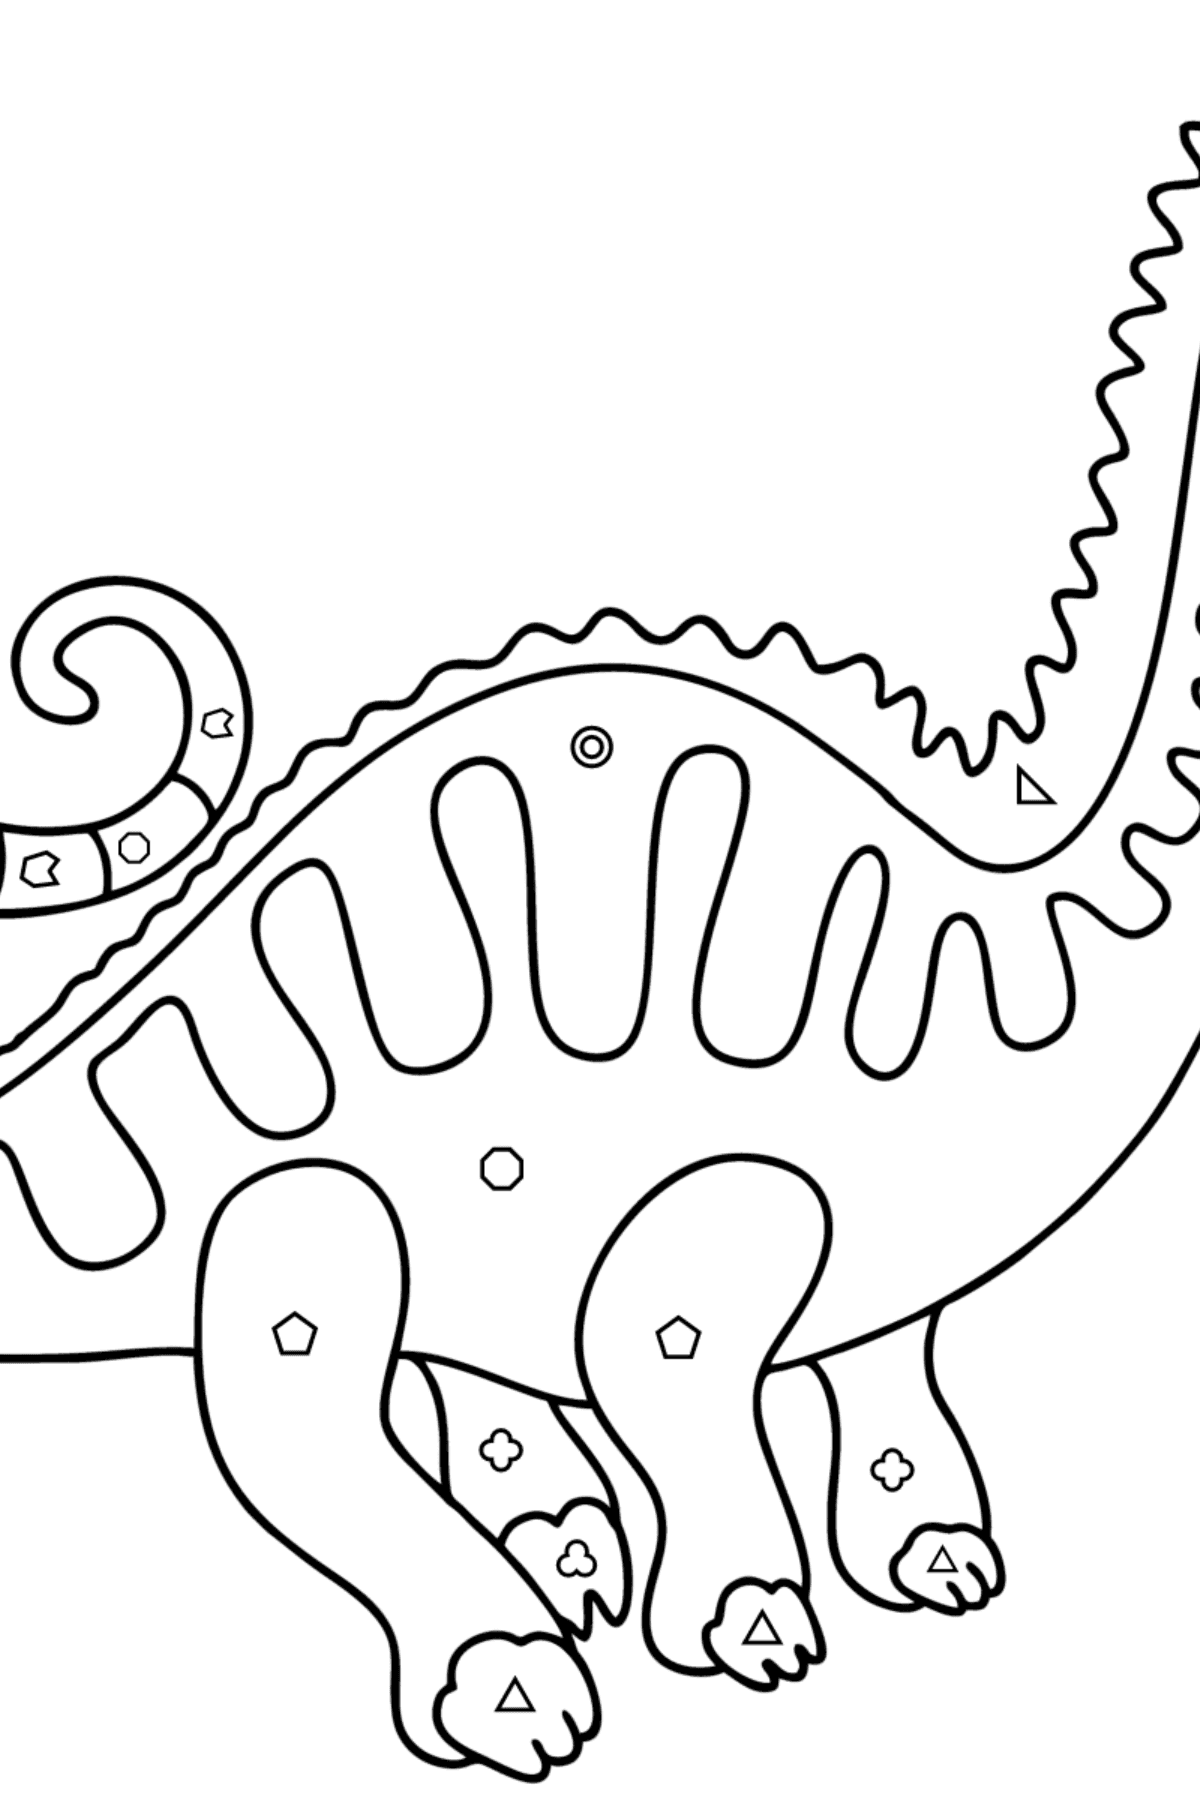 Dibujo de Apatosaurio para colorear - Colorear por Formas Geométricas para Niños